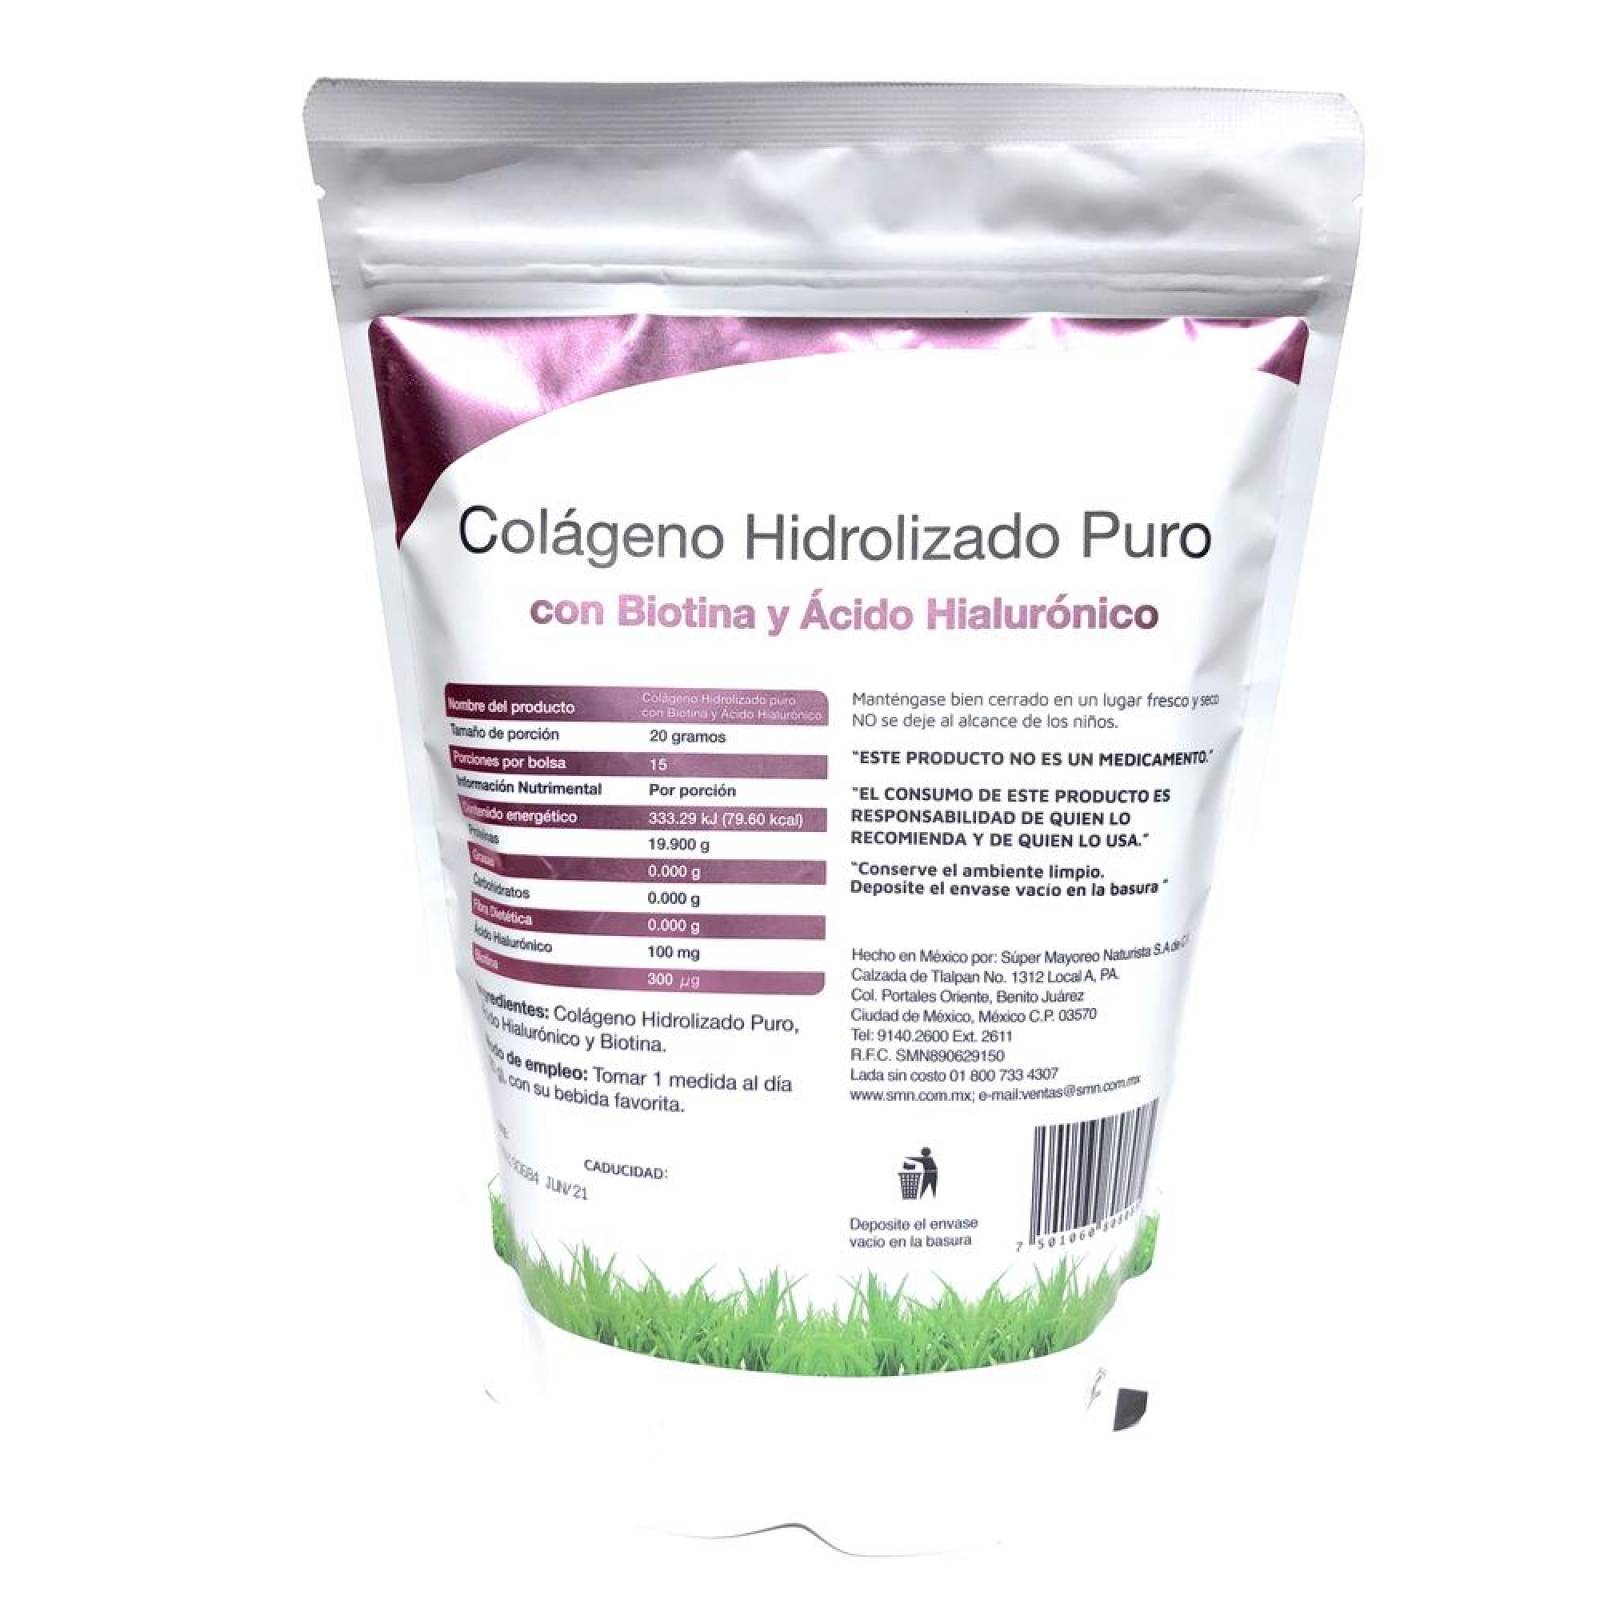 Colágeno Hidrolizado Puro, Biotina, Acido Hialurónico 300 grs 